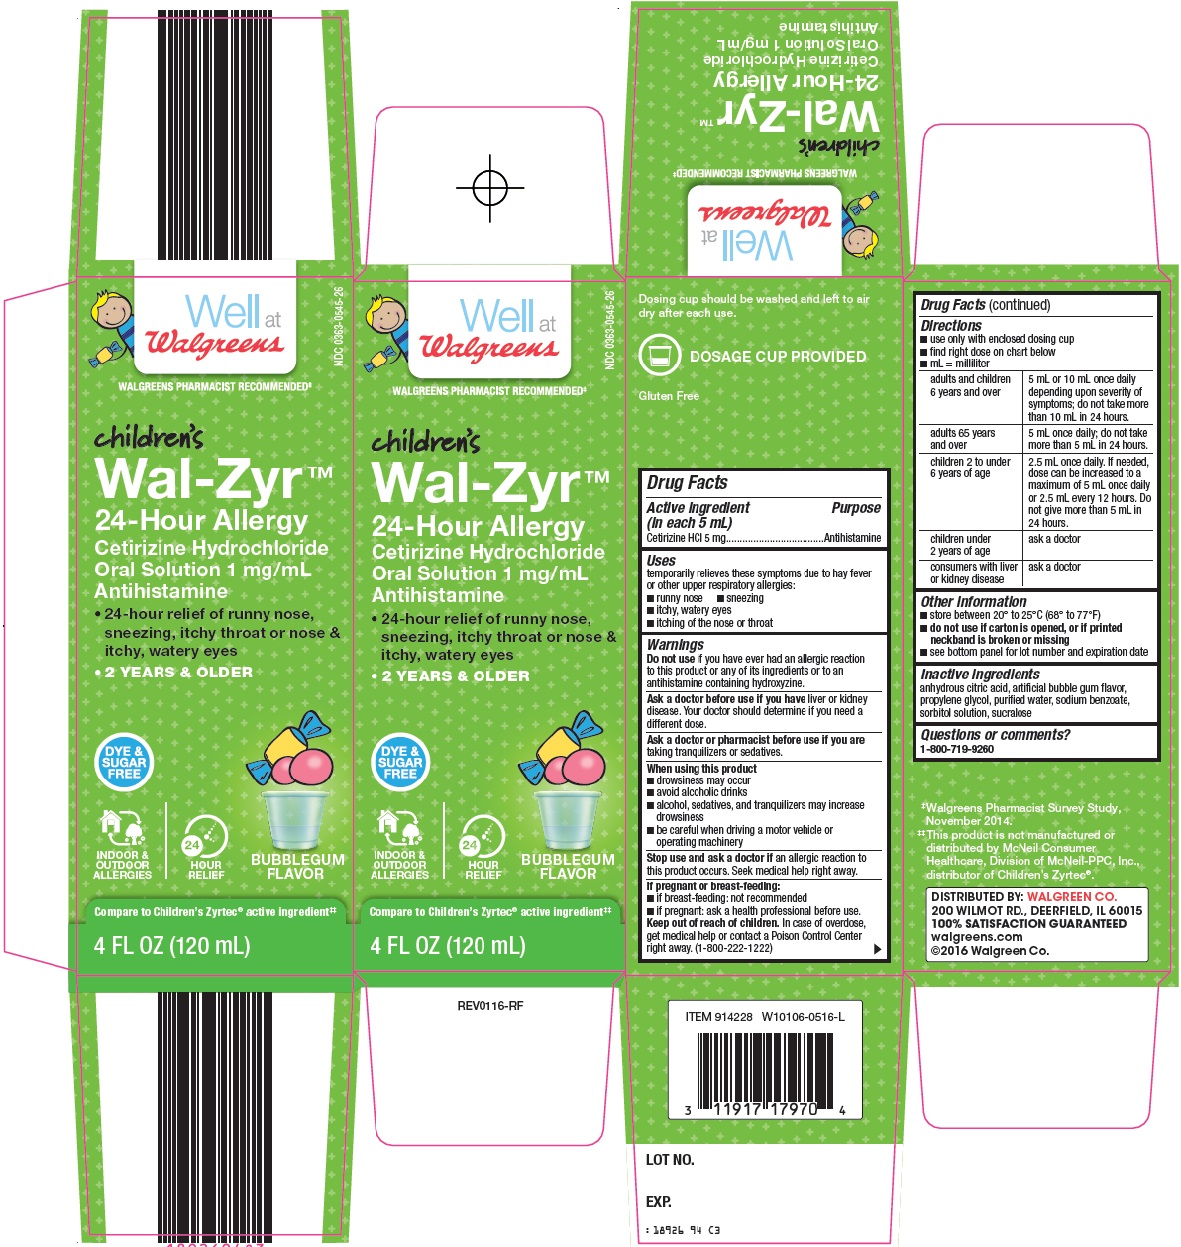 Walgreens Wal-Zyr